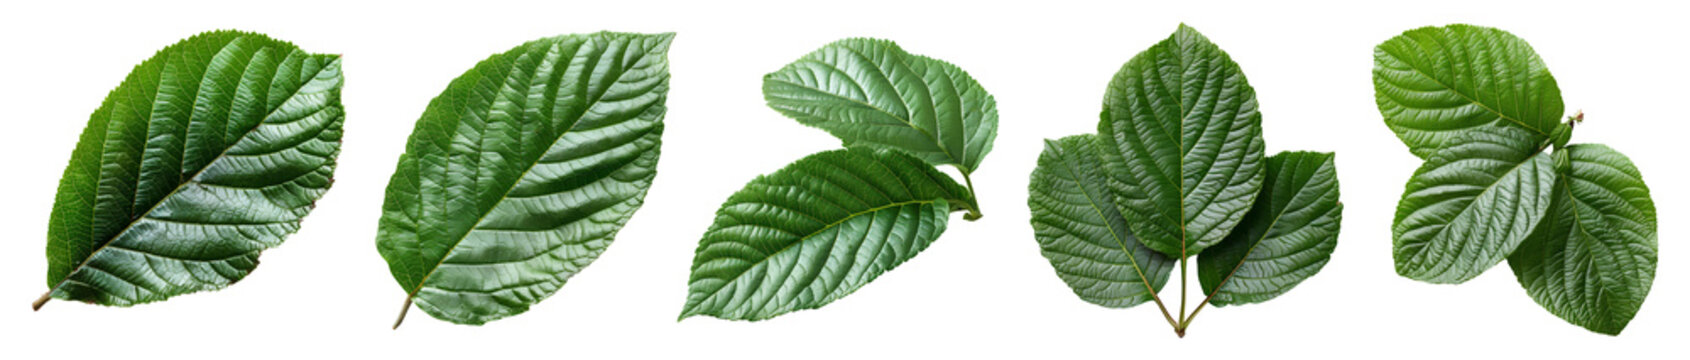 guava leaf set png. set of green guava leaves isolated. guava leaf png. guava leaf from guava tree i